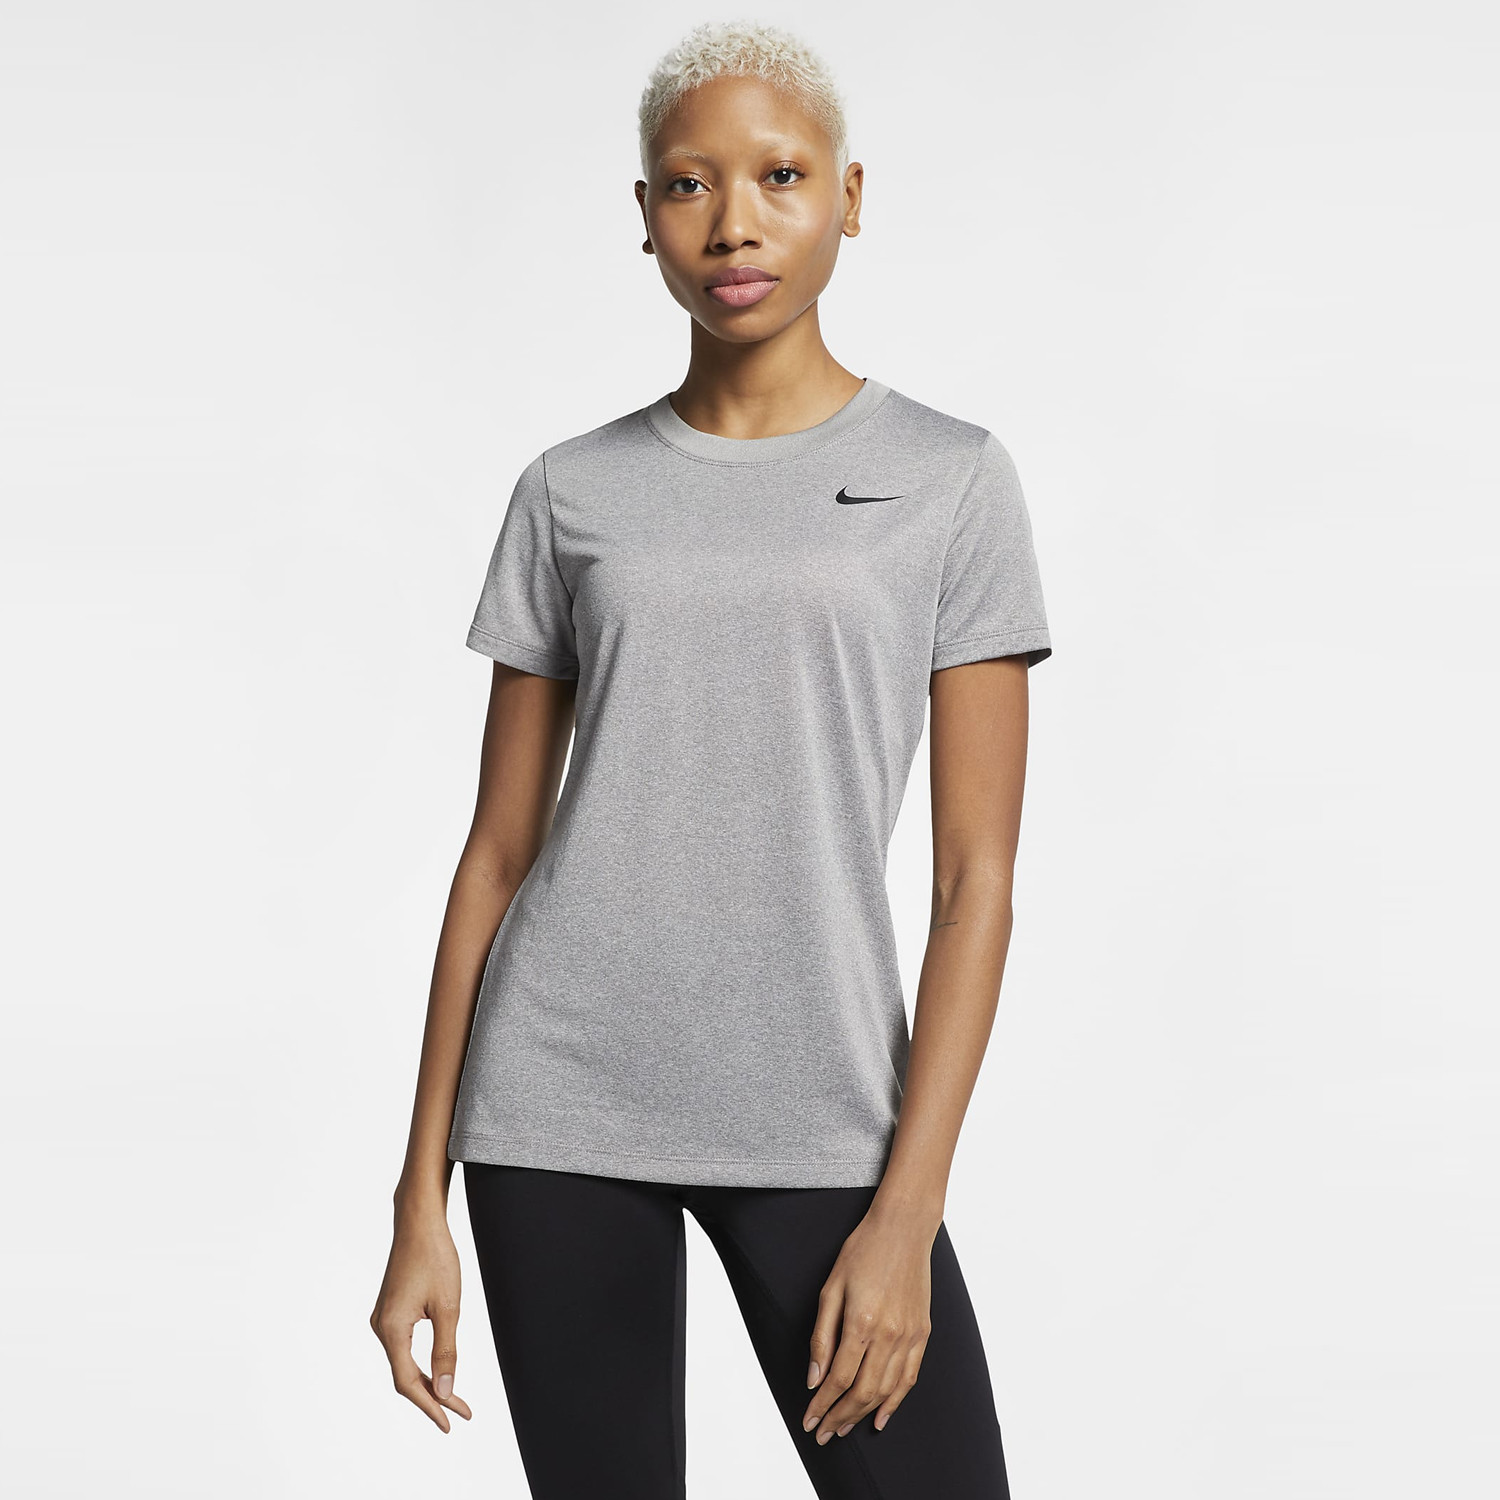 Nike Dri-FIT Legend Î“Ï…Î½Î±Î¹ÎºÎµÎ¯Î¿ T-Shirt (9000093960_6077)